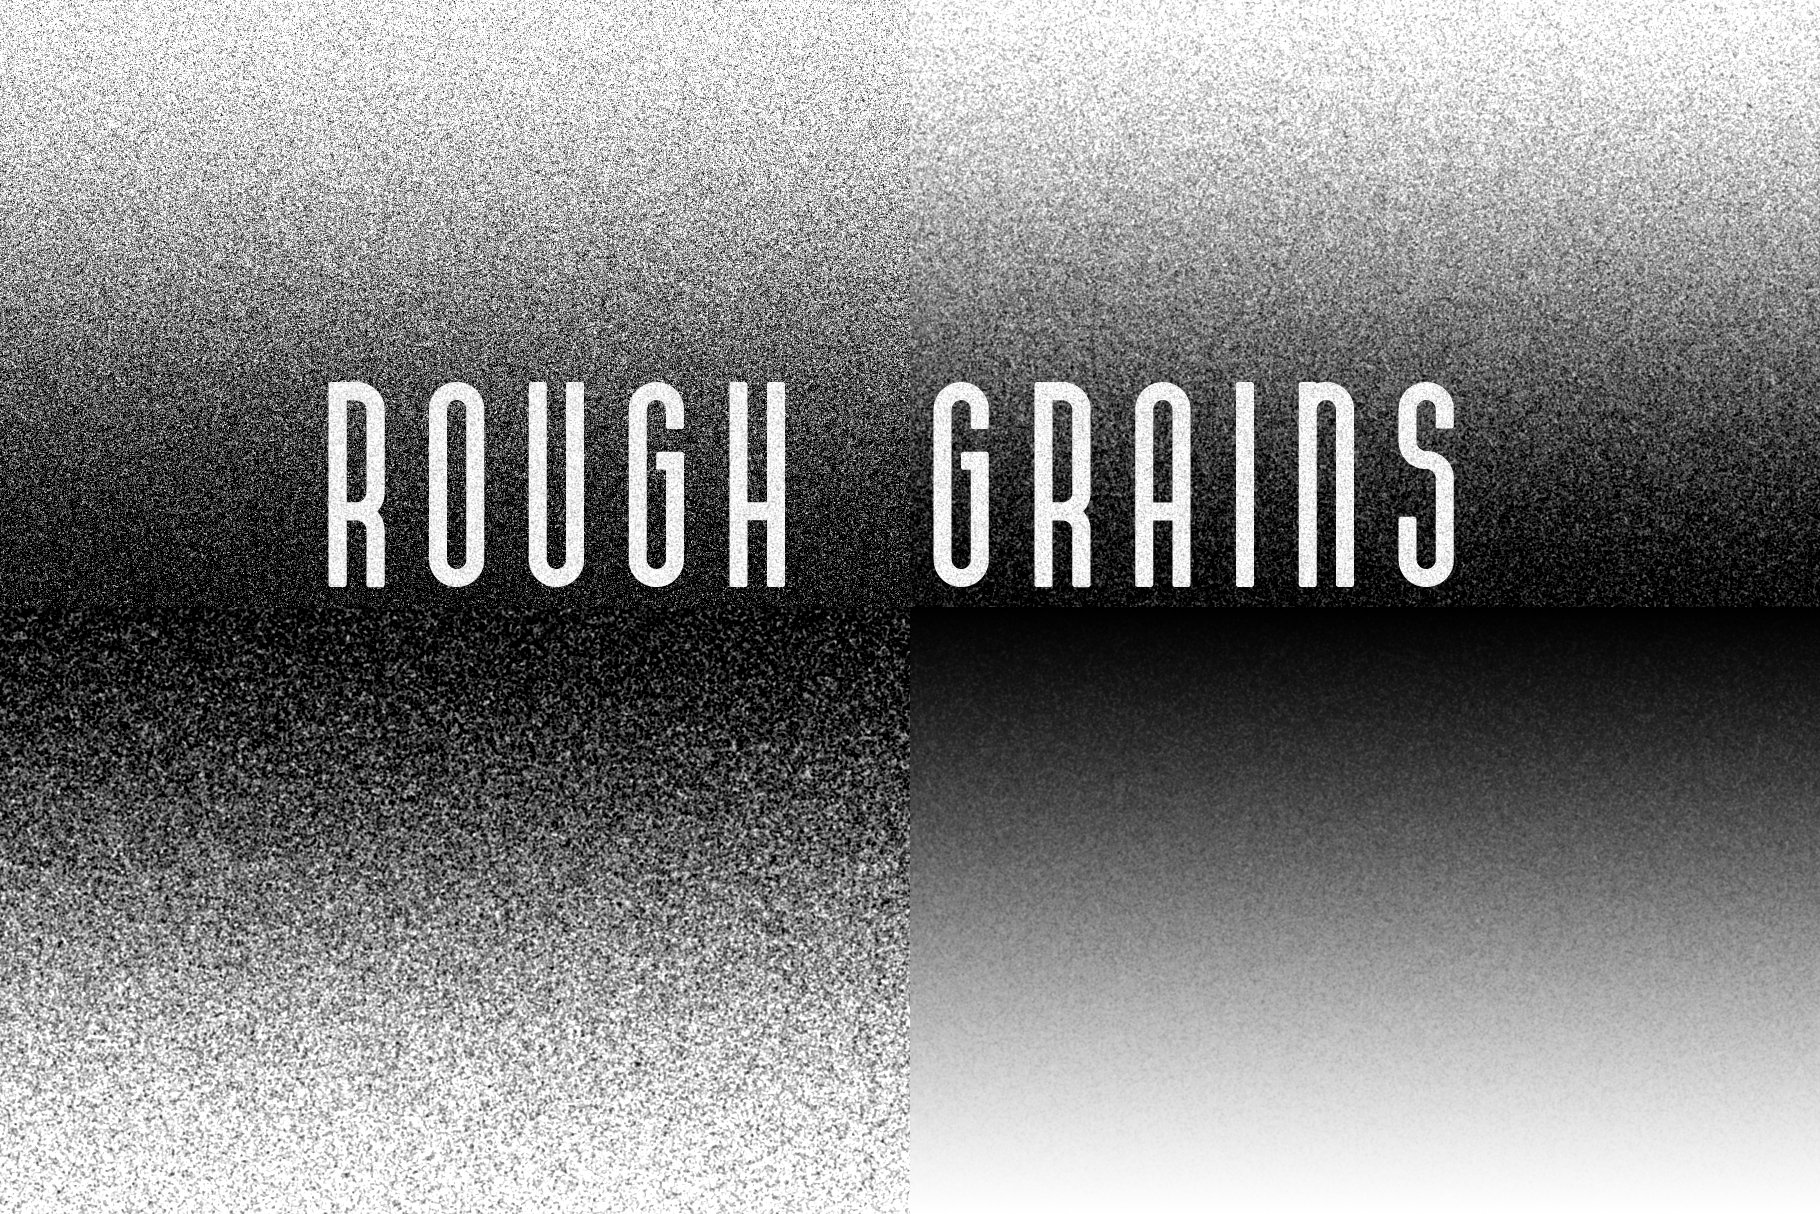 grainmaker roughgrains black 833